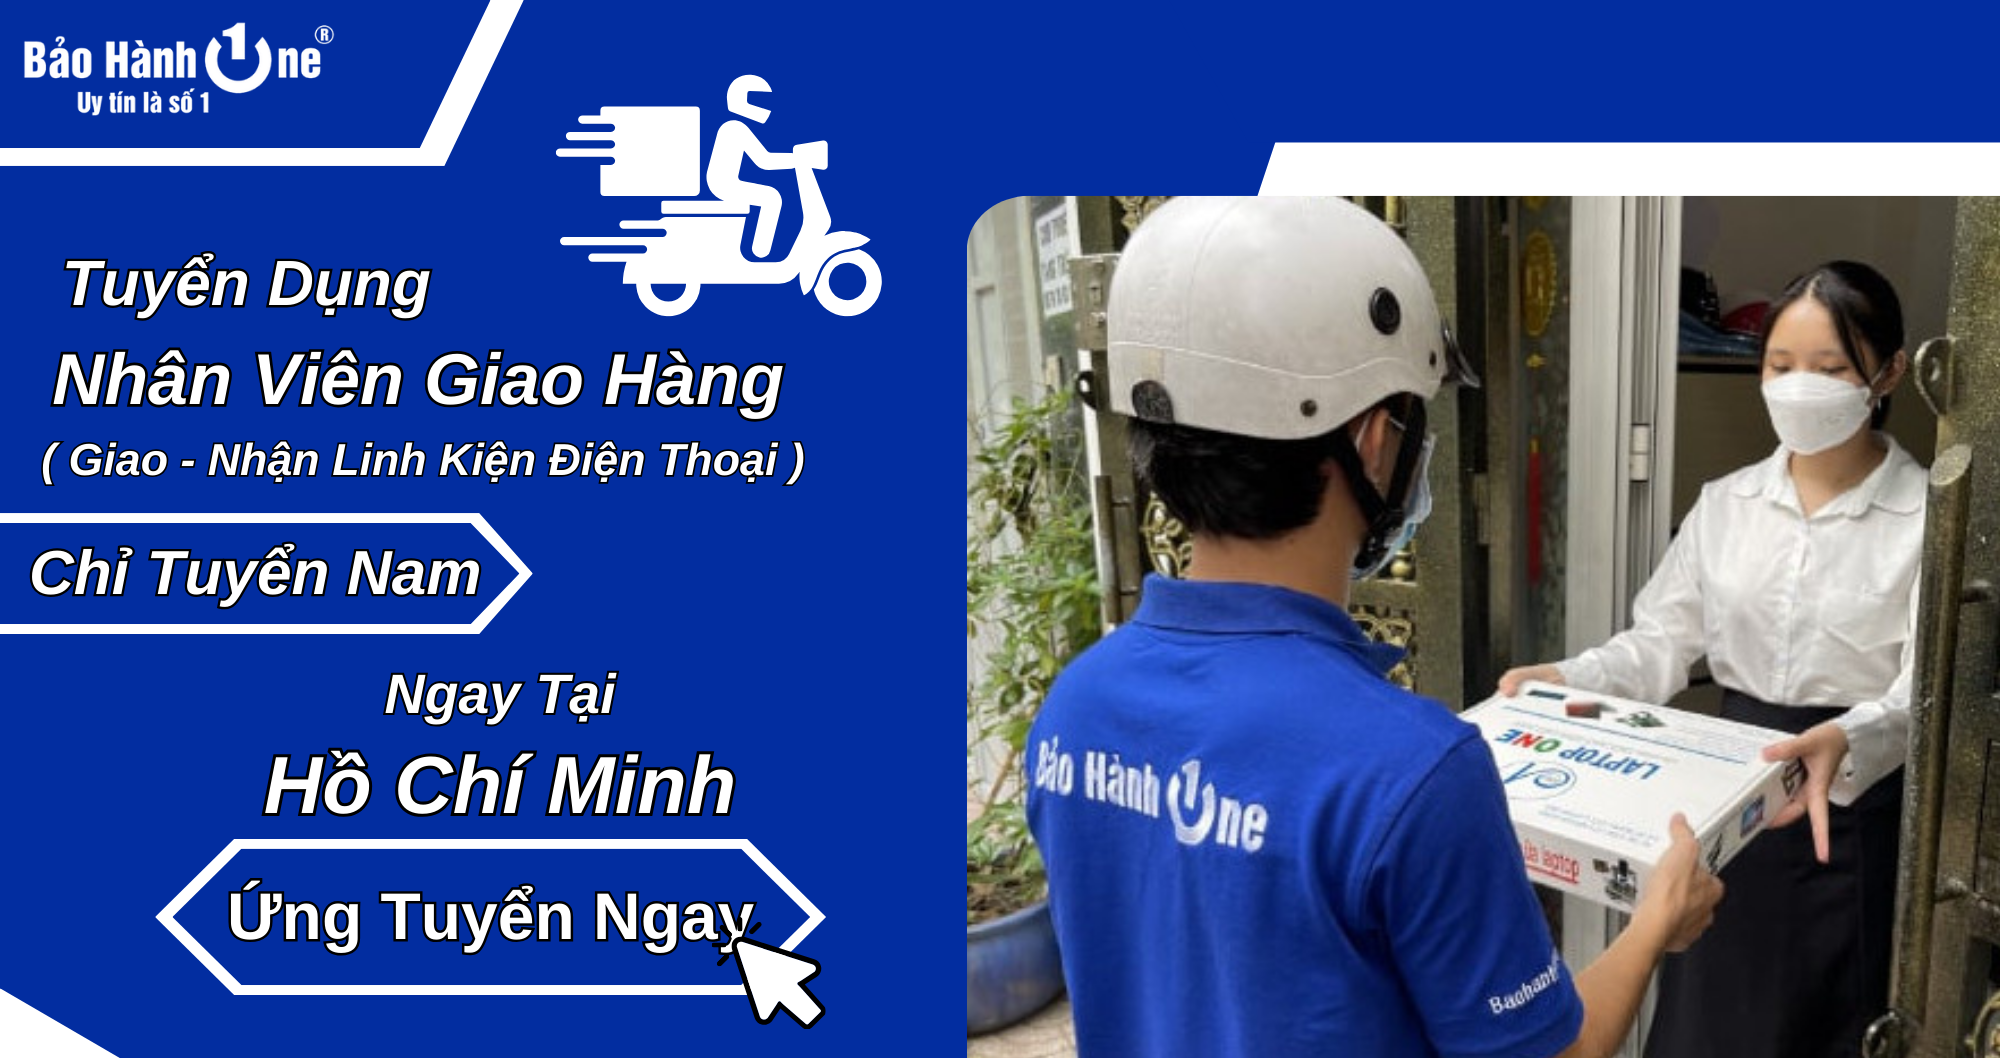 Tuyển dụng Nhân Viên Giao Hàng Bằng Xe Máy (Quận 10) - Hồ Chí Minh